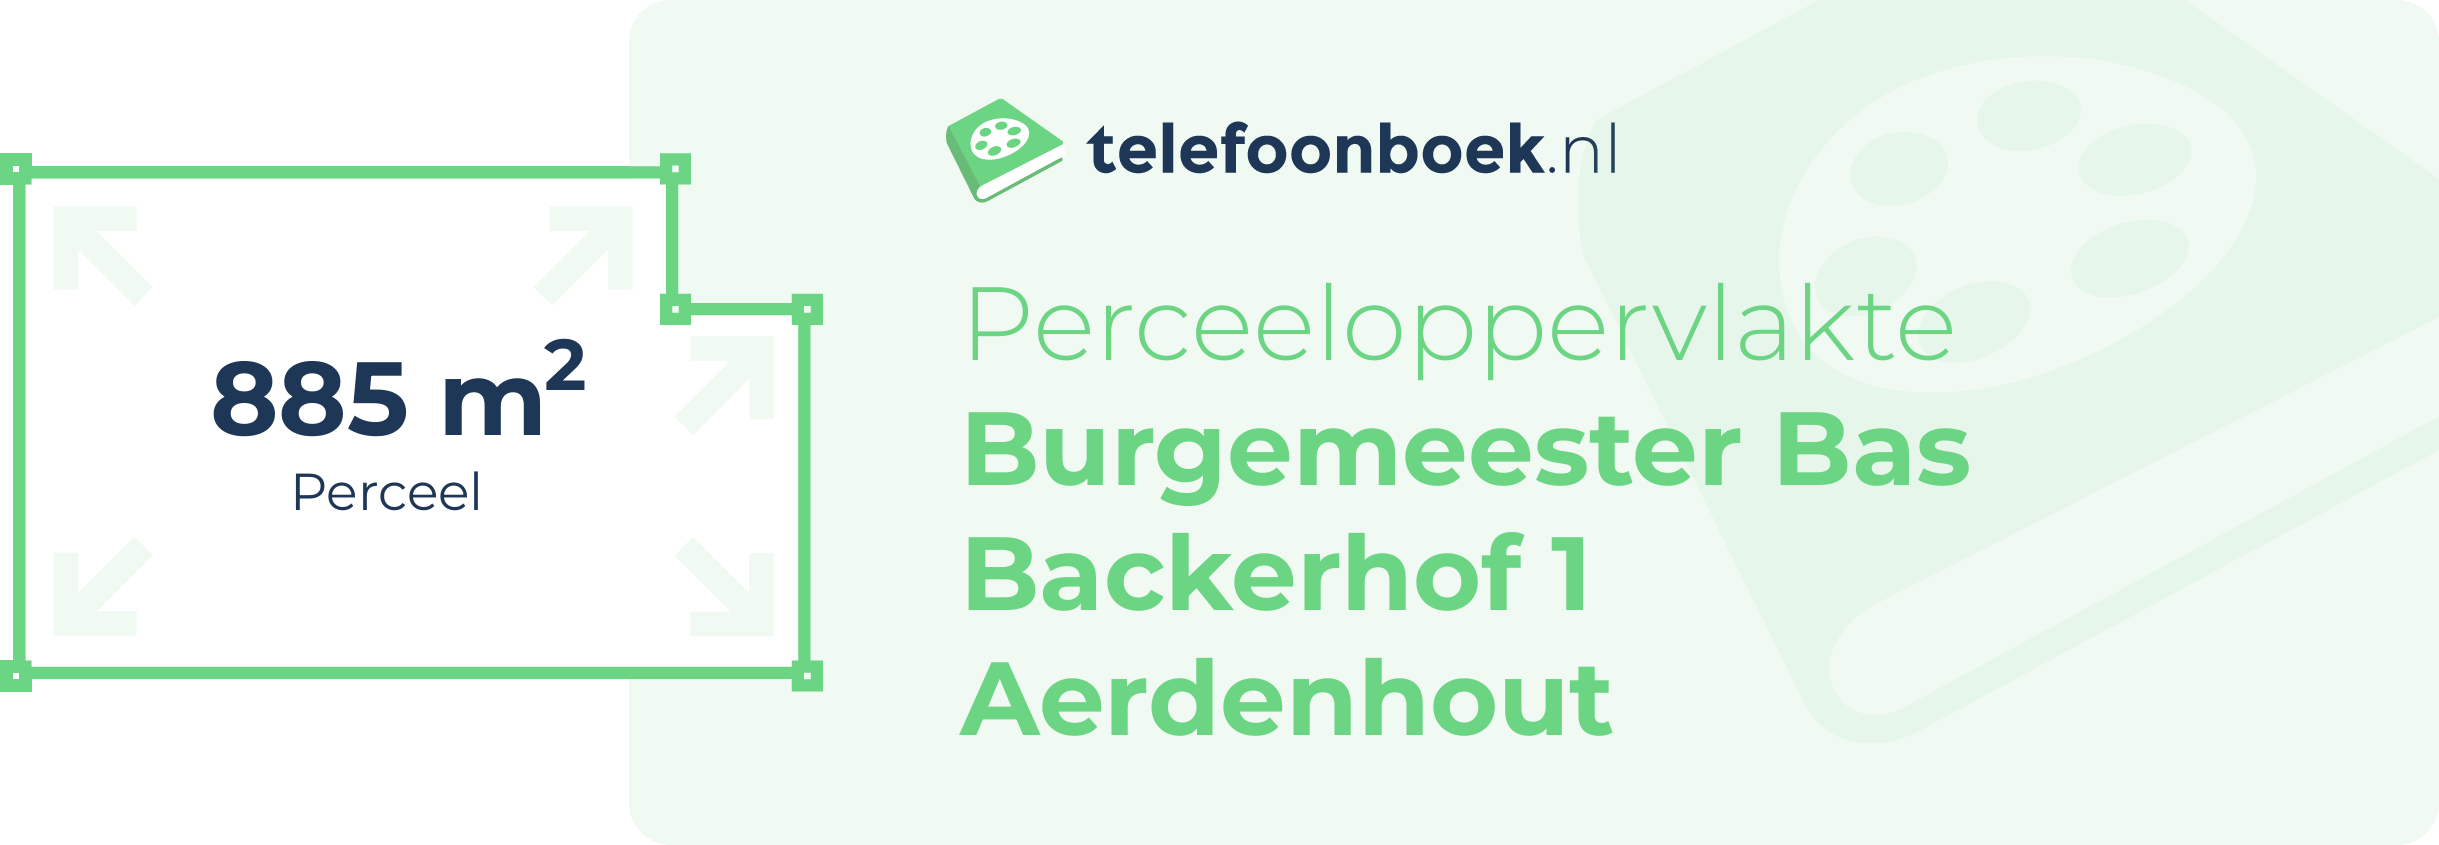 Perceeloppervlakte Burgemeester Bas Backerhof 1 Aerdenhout